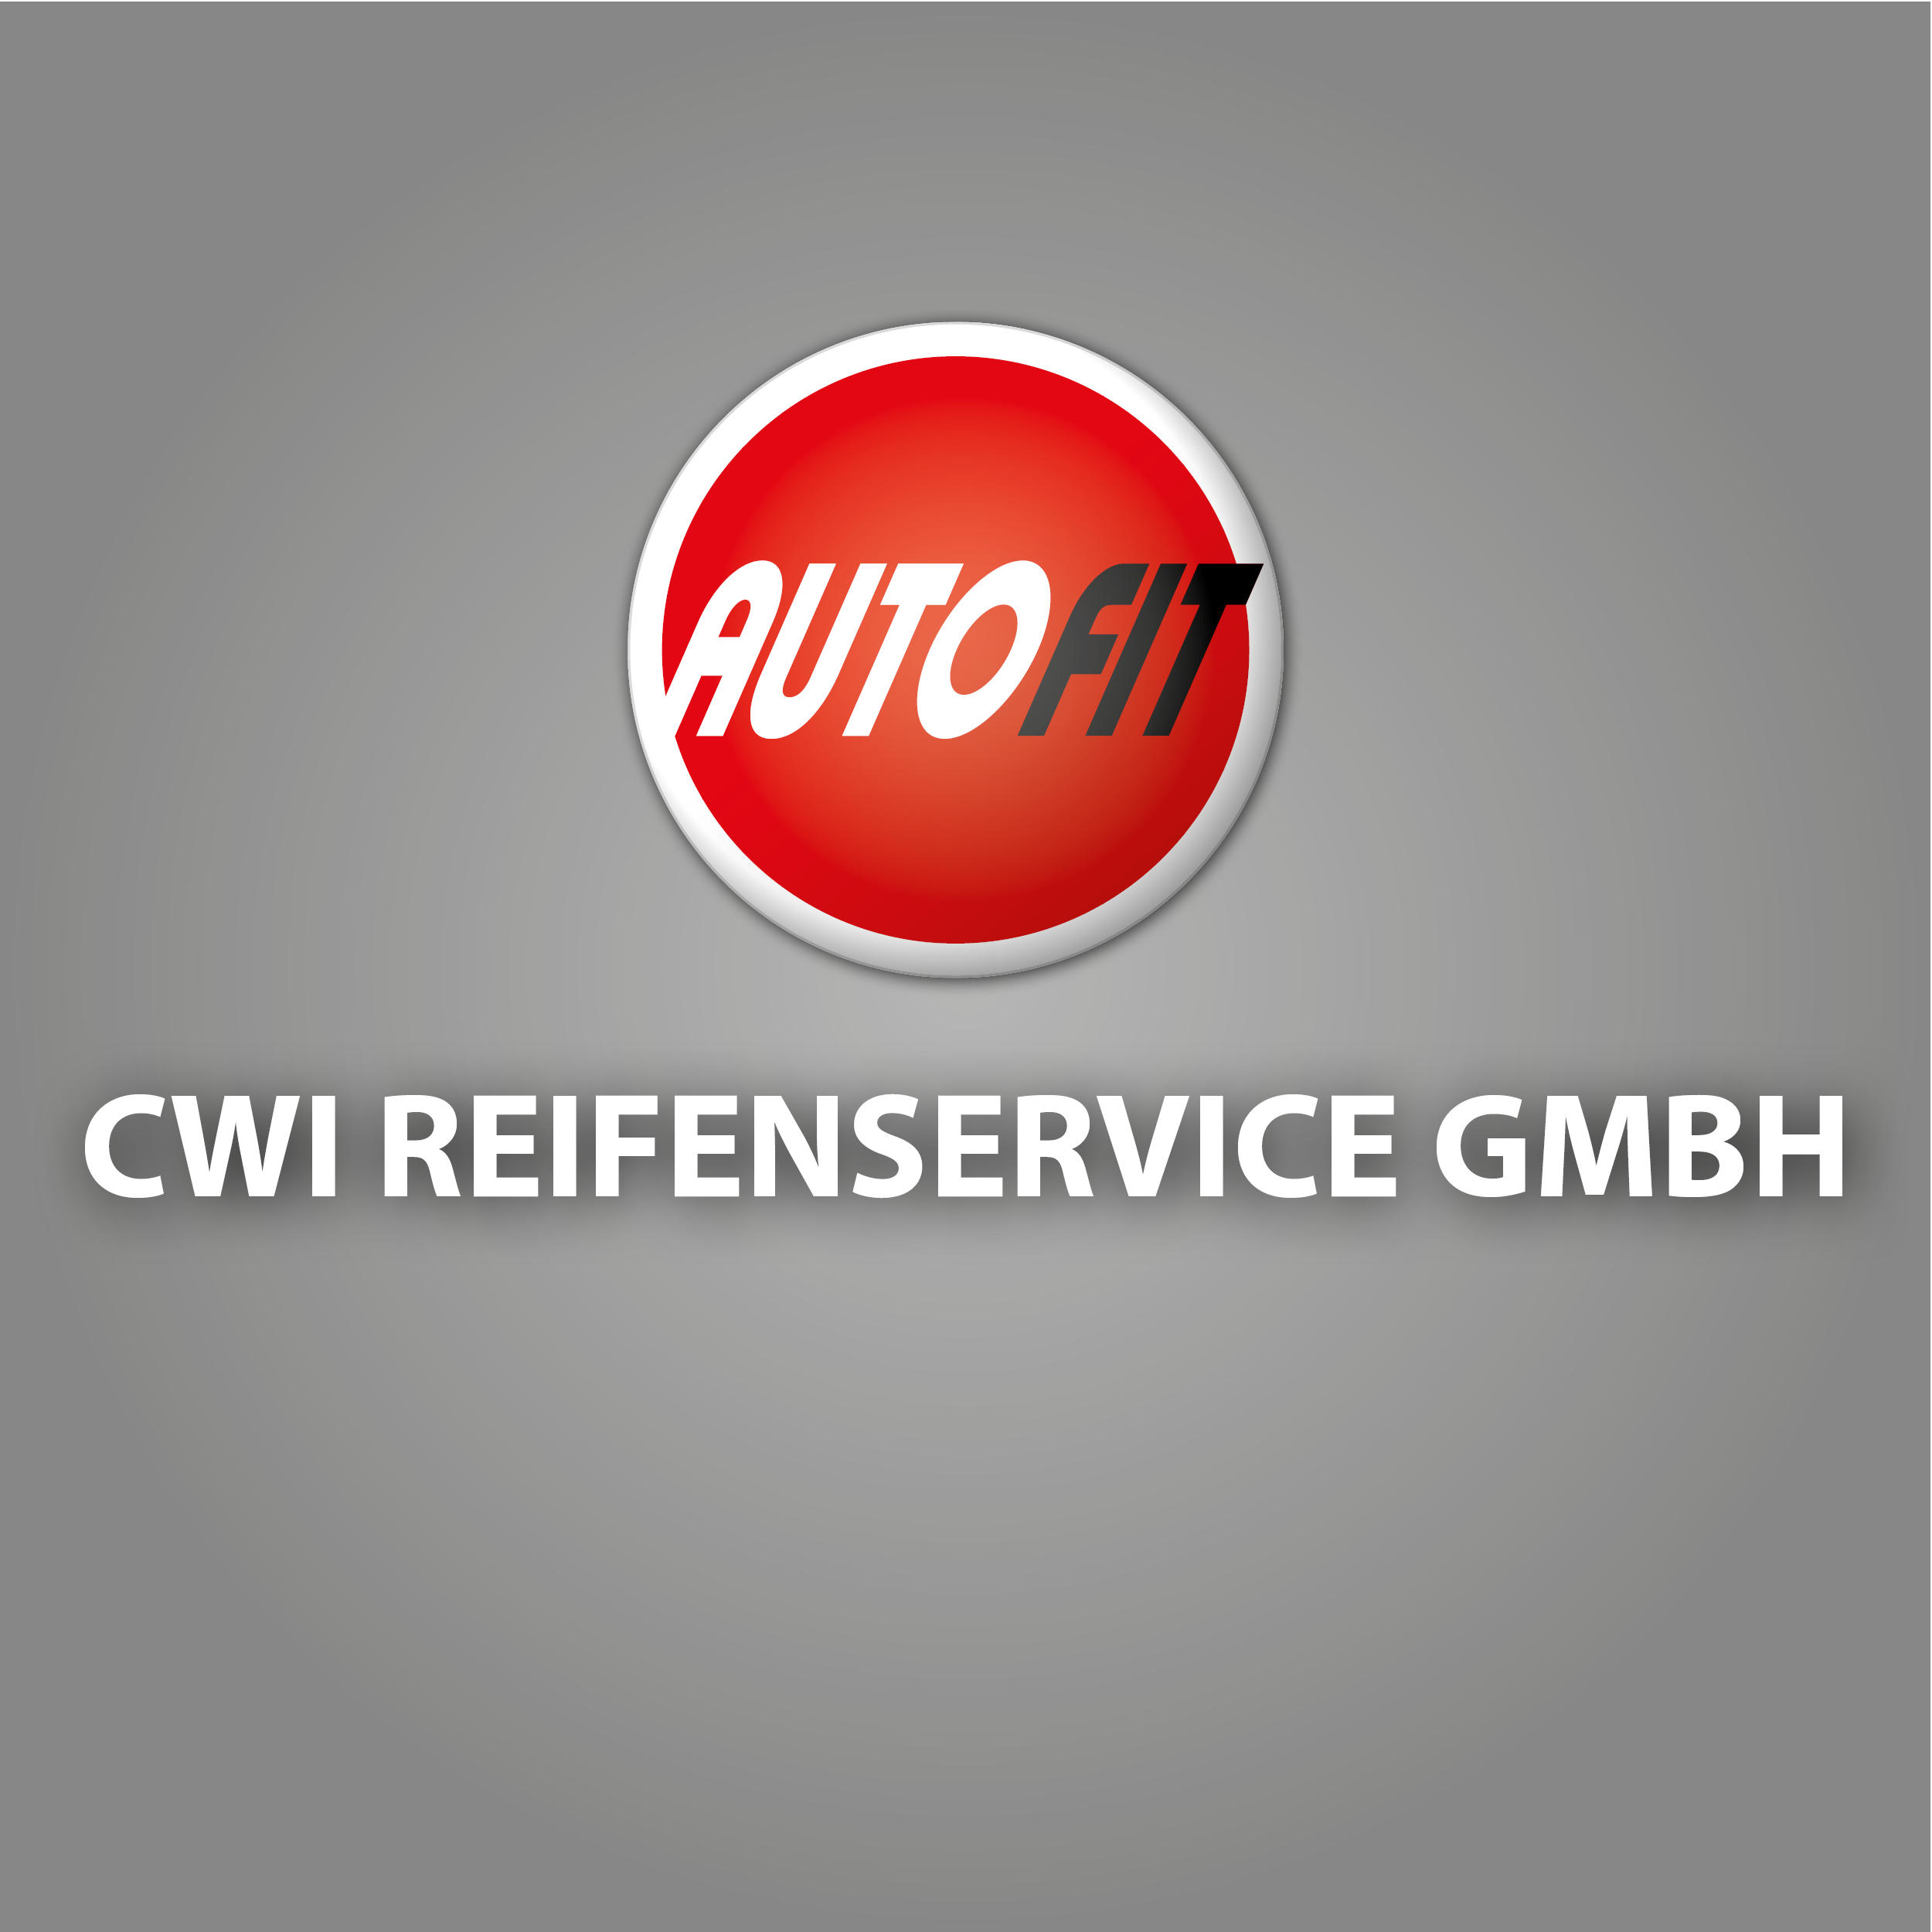 CWI Reifenservice GmbH  